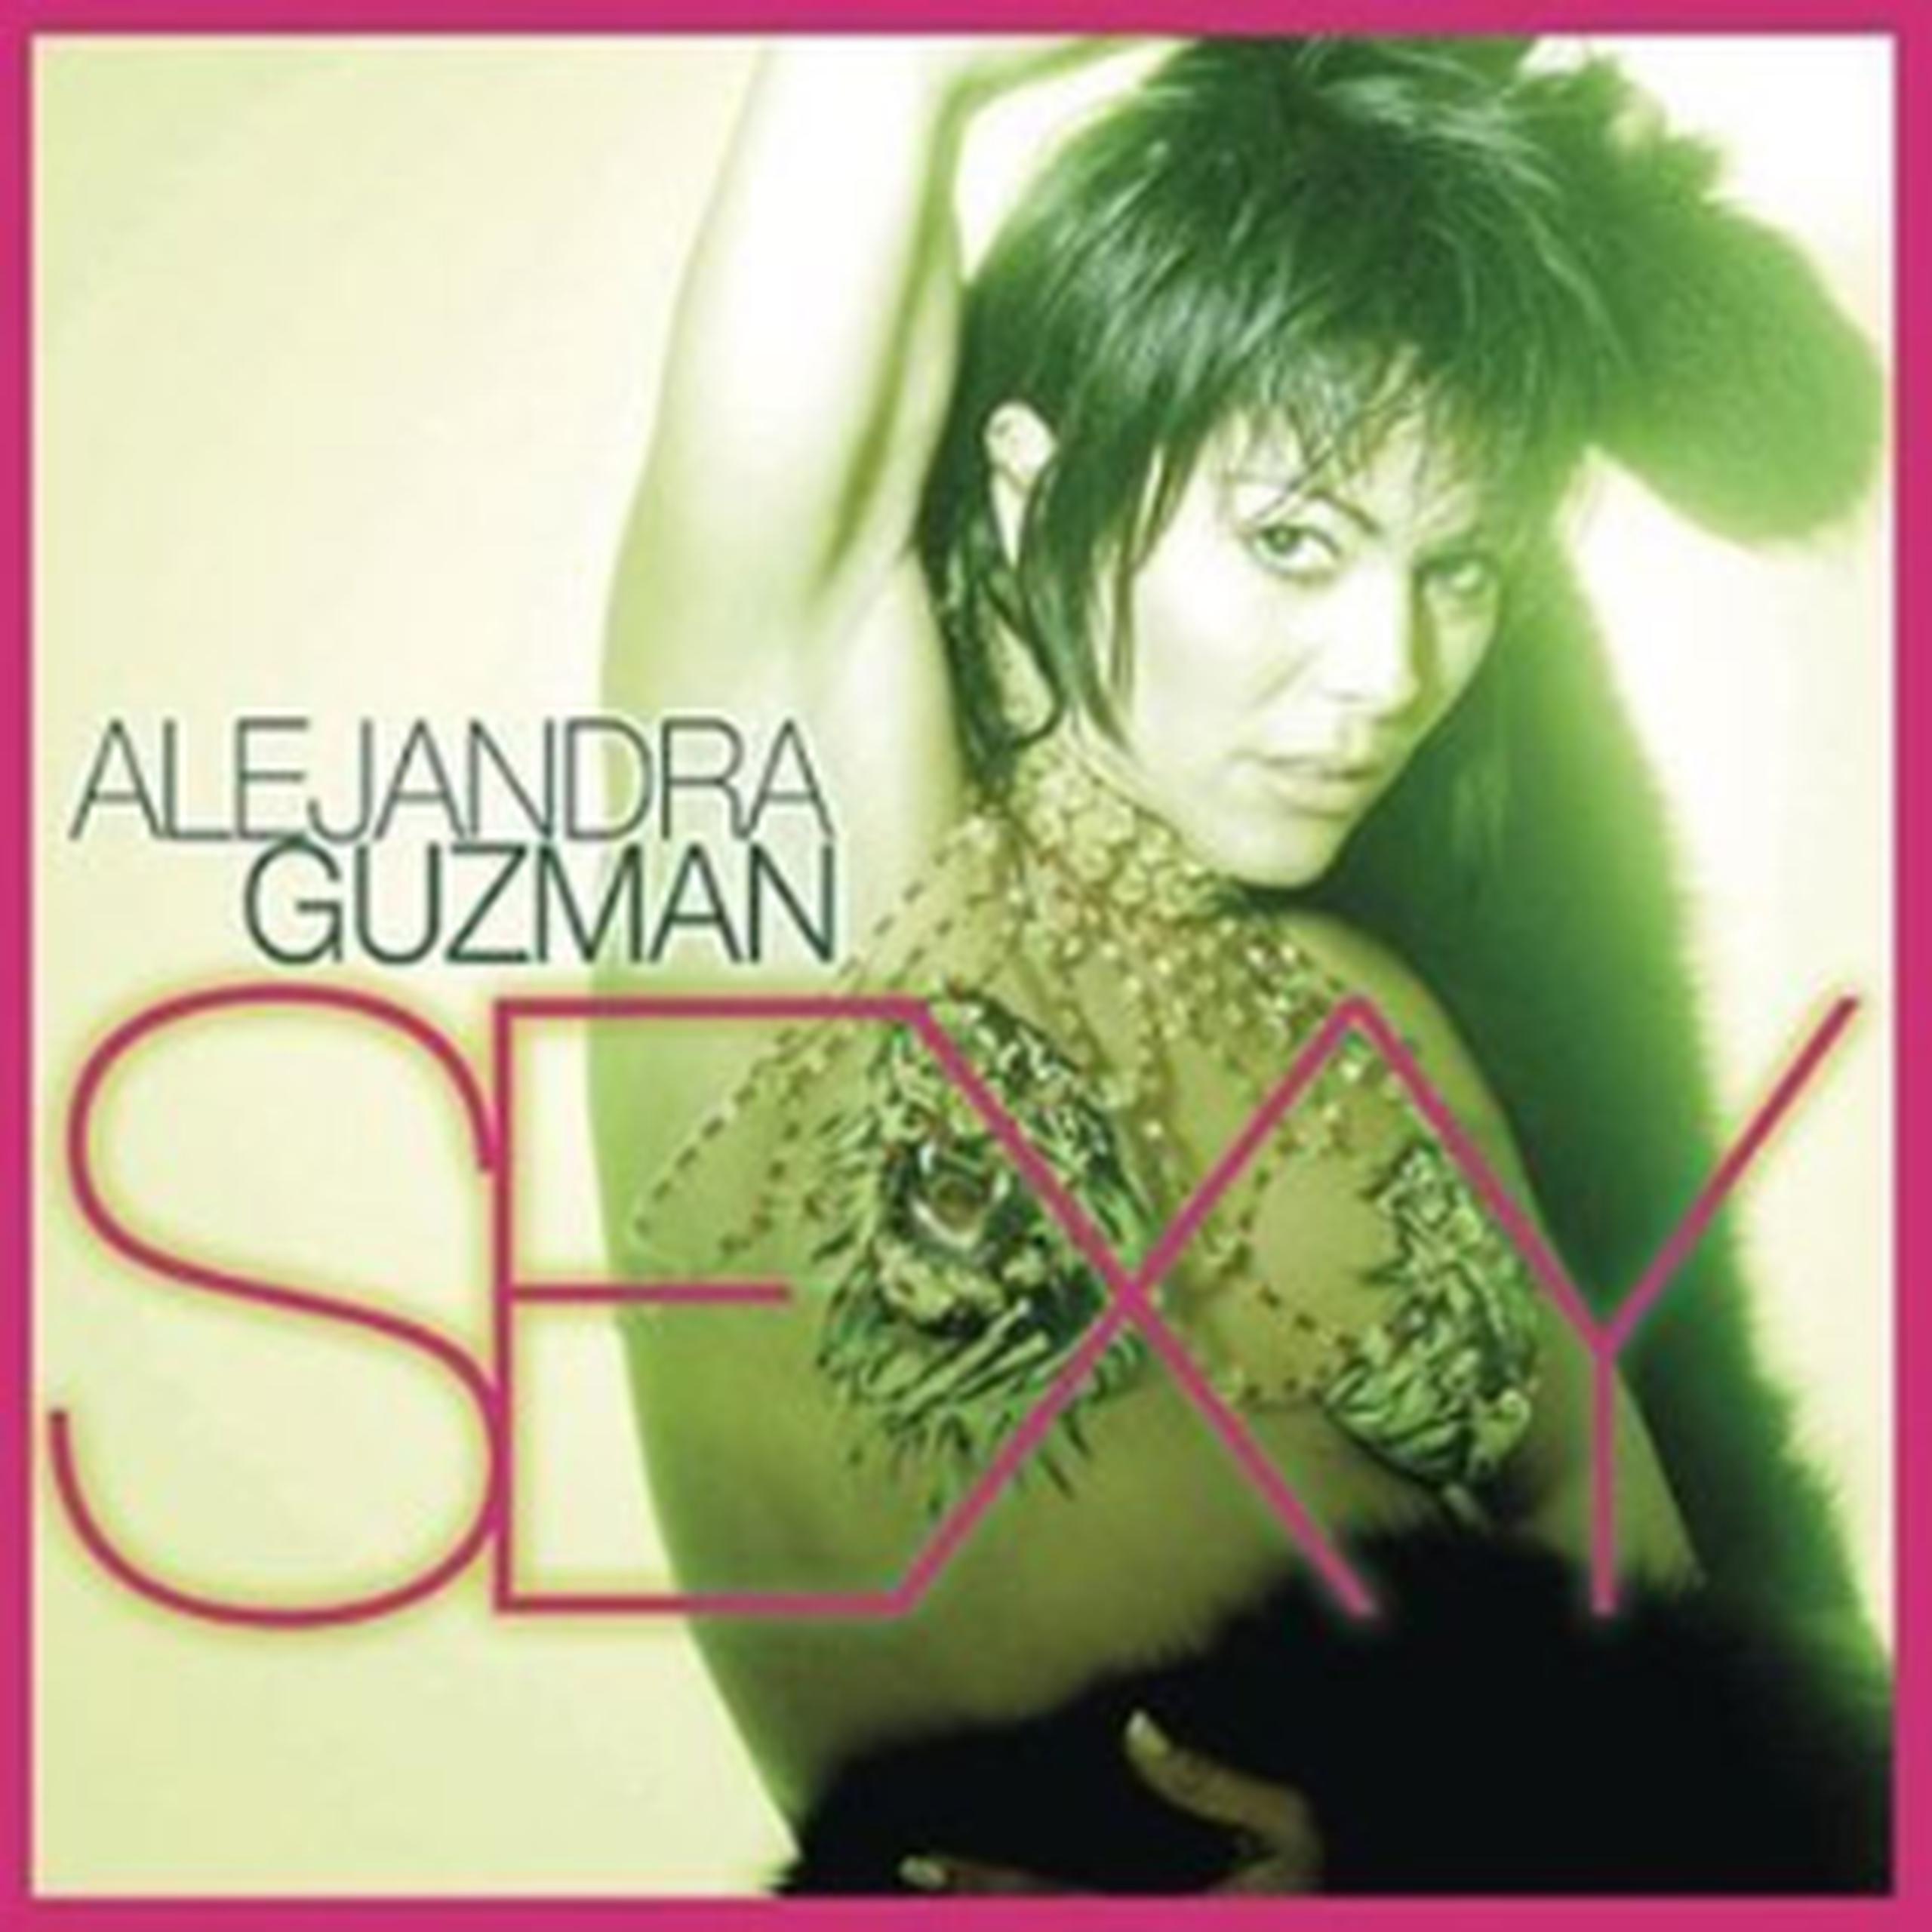 Sony lanzó por error el pasado 29 de enero el disco "Sexy", en el que recopila éxitos de su carrera como "Hacer el amor con otro", "Loca", "Quiero estar contigo" y "Ven", entre otros. (Carátula)